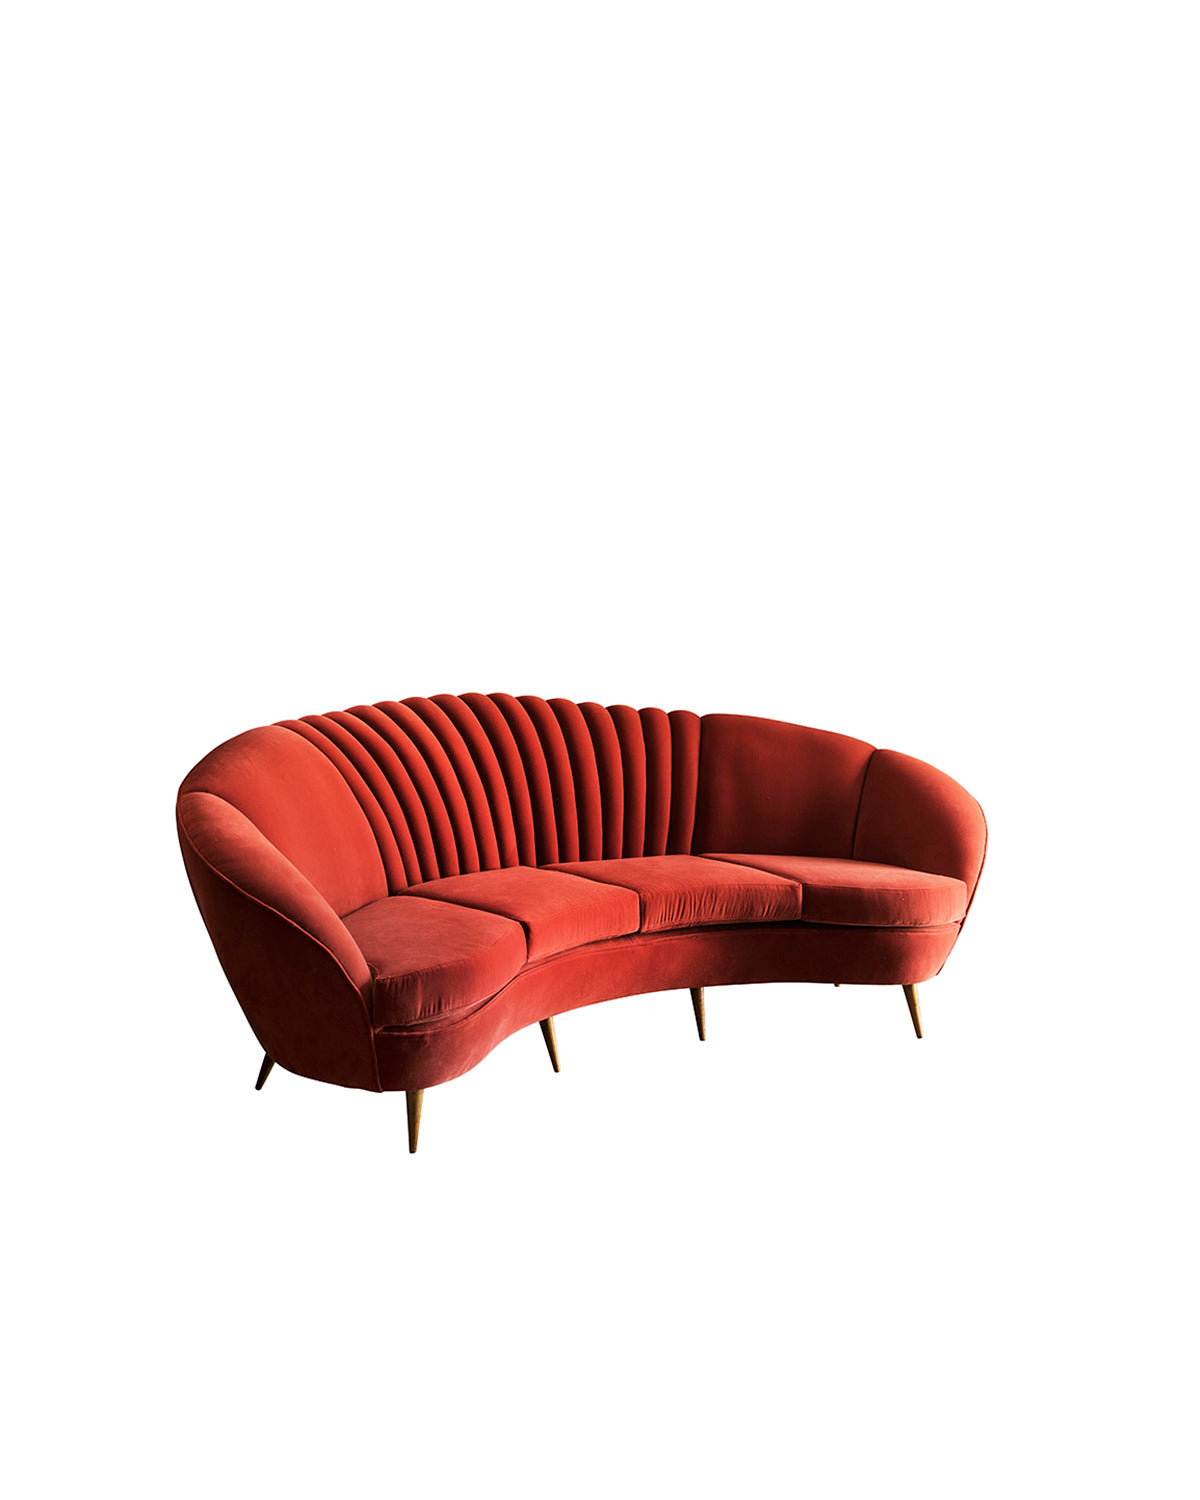 Sofa in red velvet. Italy, 1950s